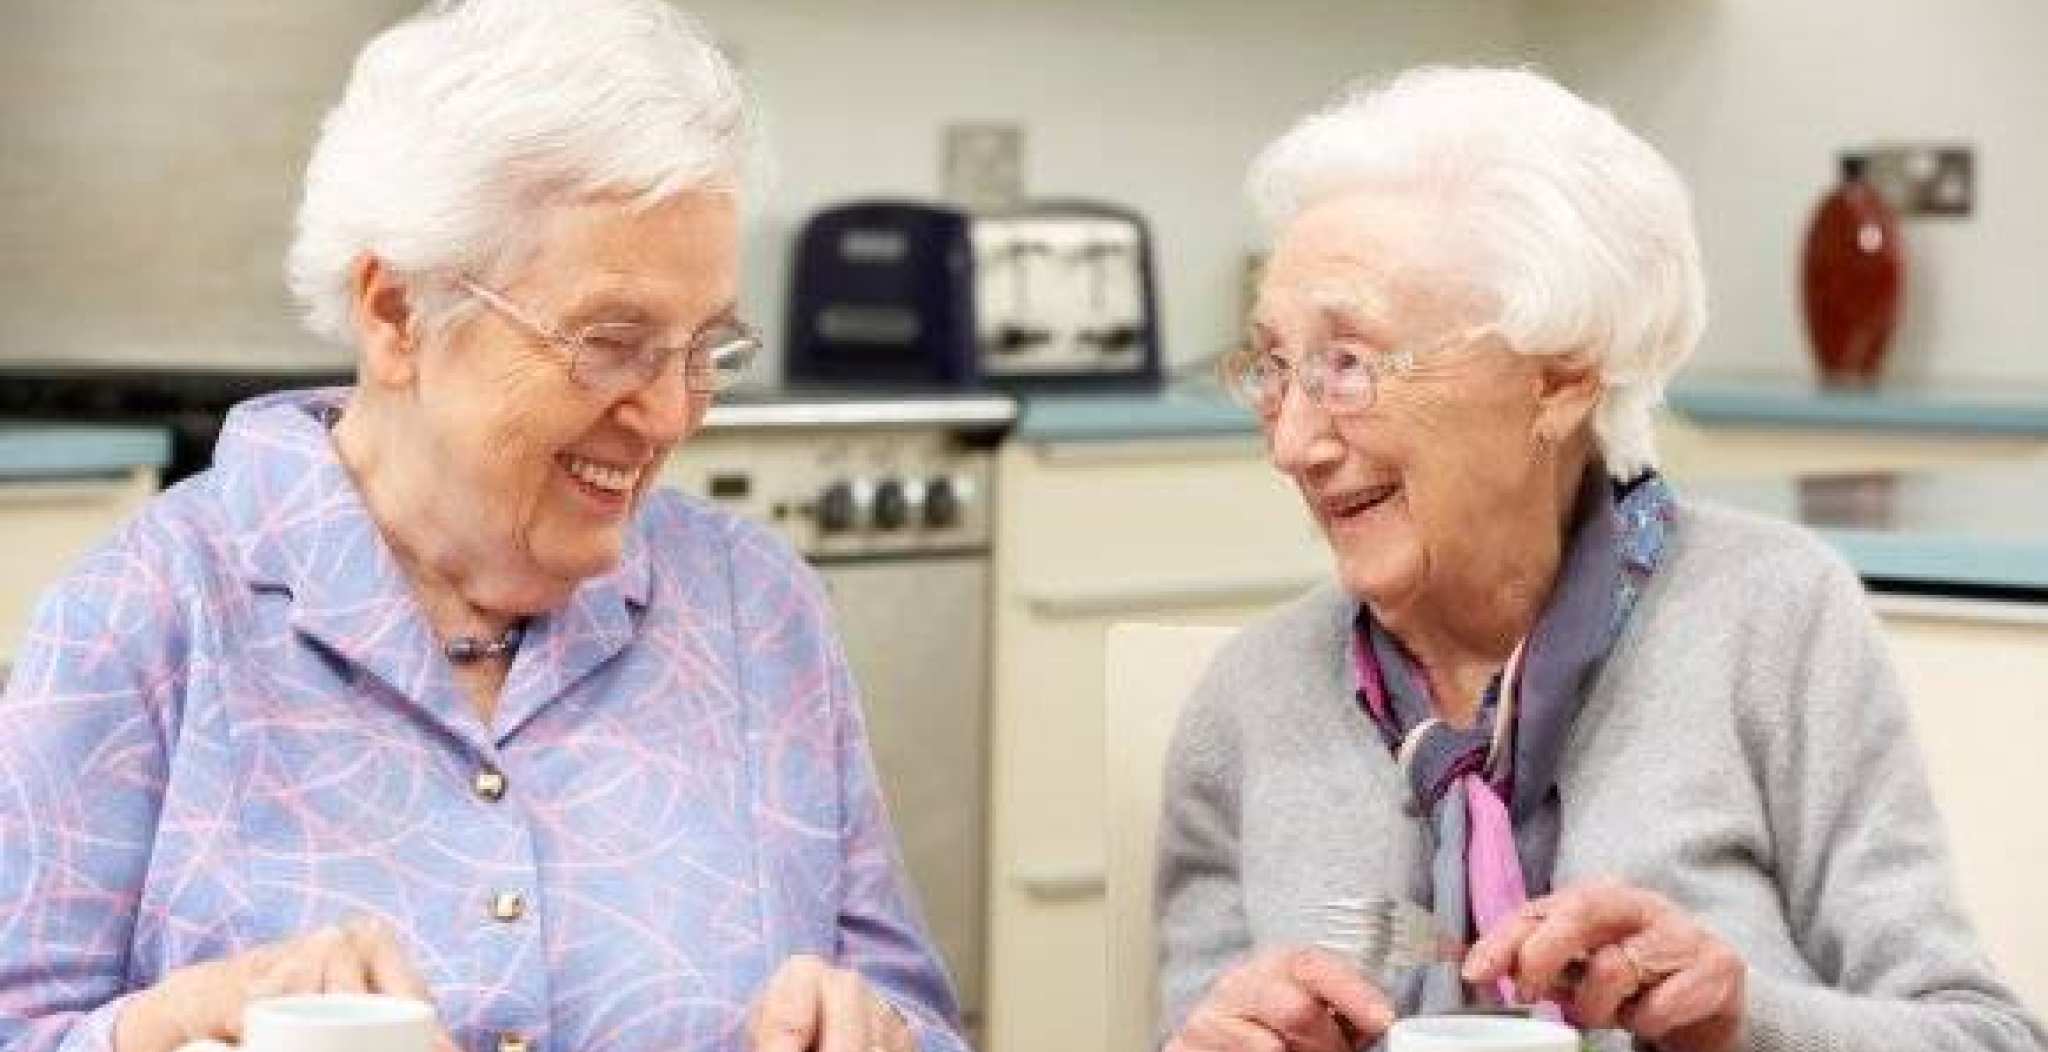 project Eten met Lange Tanden is een project om ouderen die problemen hebben met mondgezondheid op te sporen. 